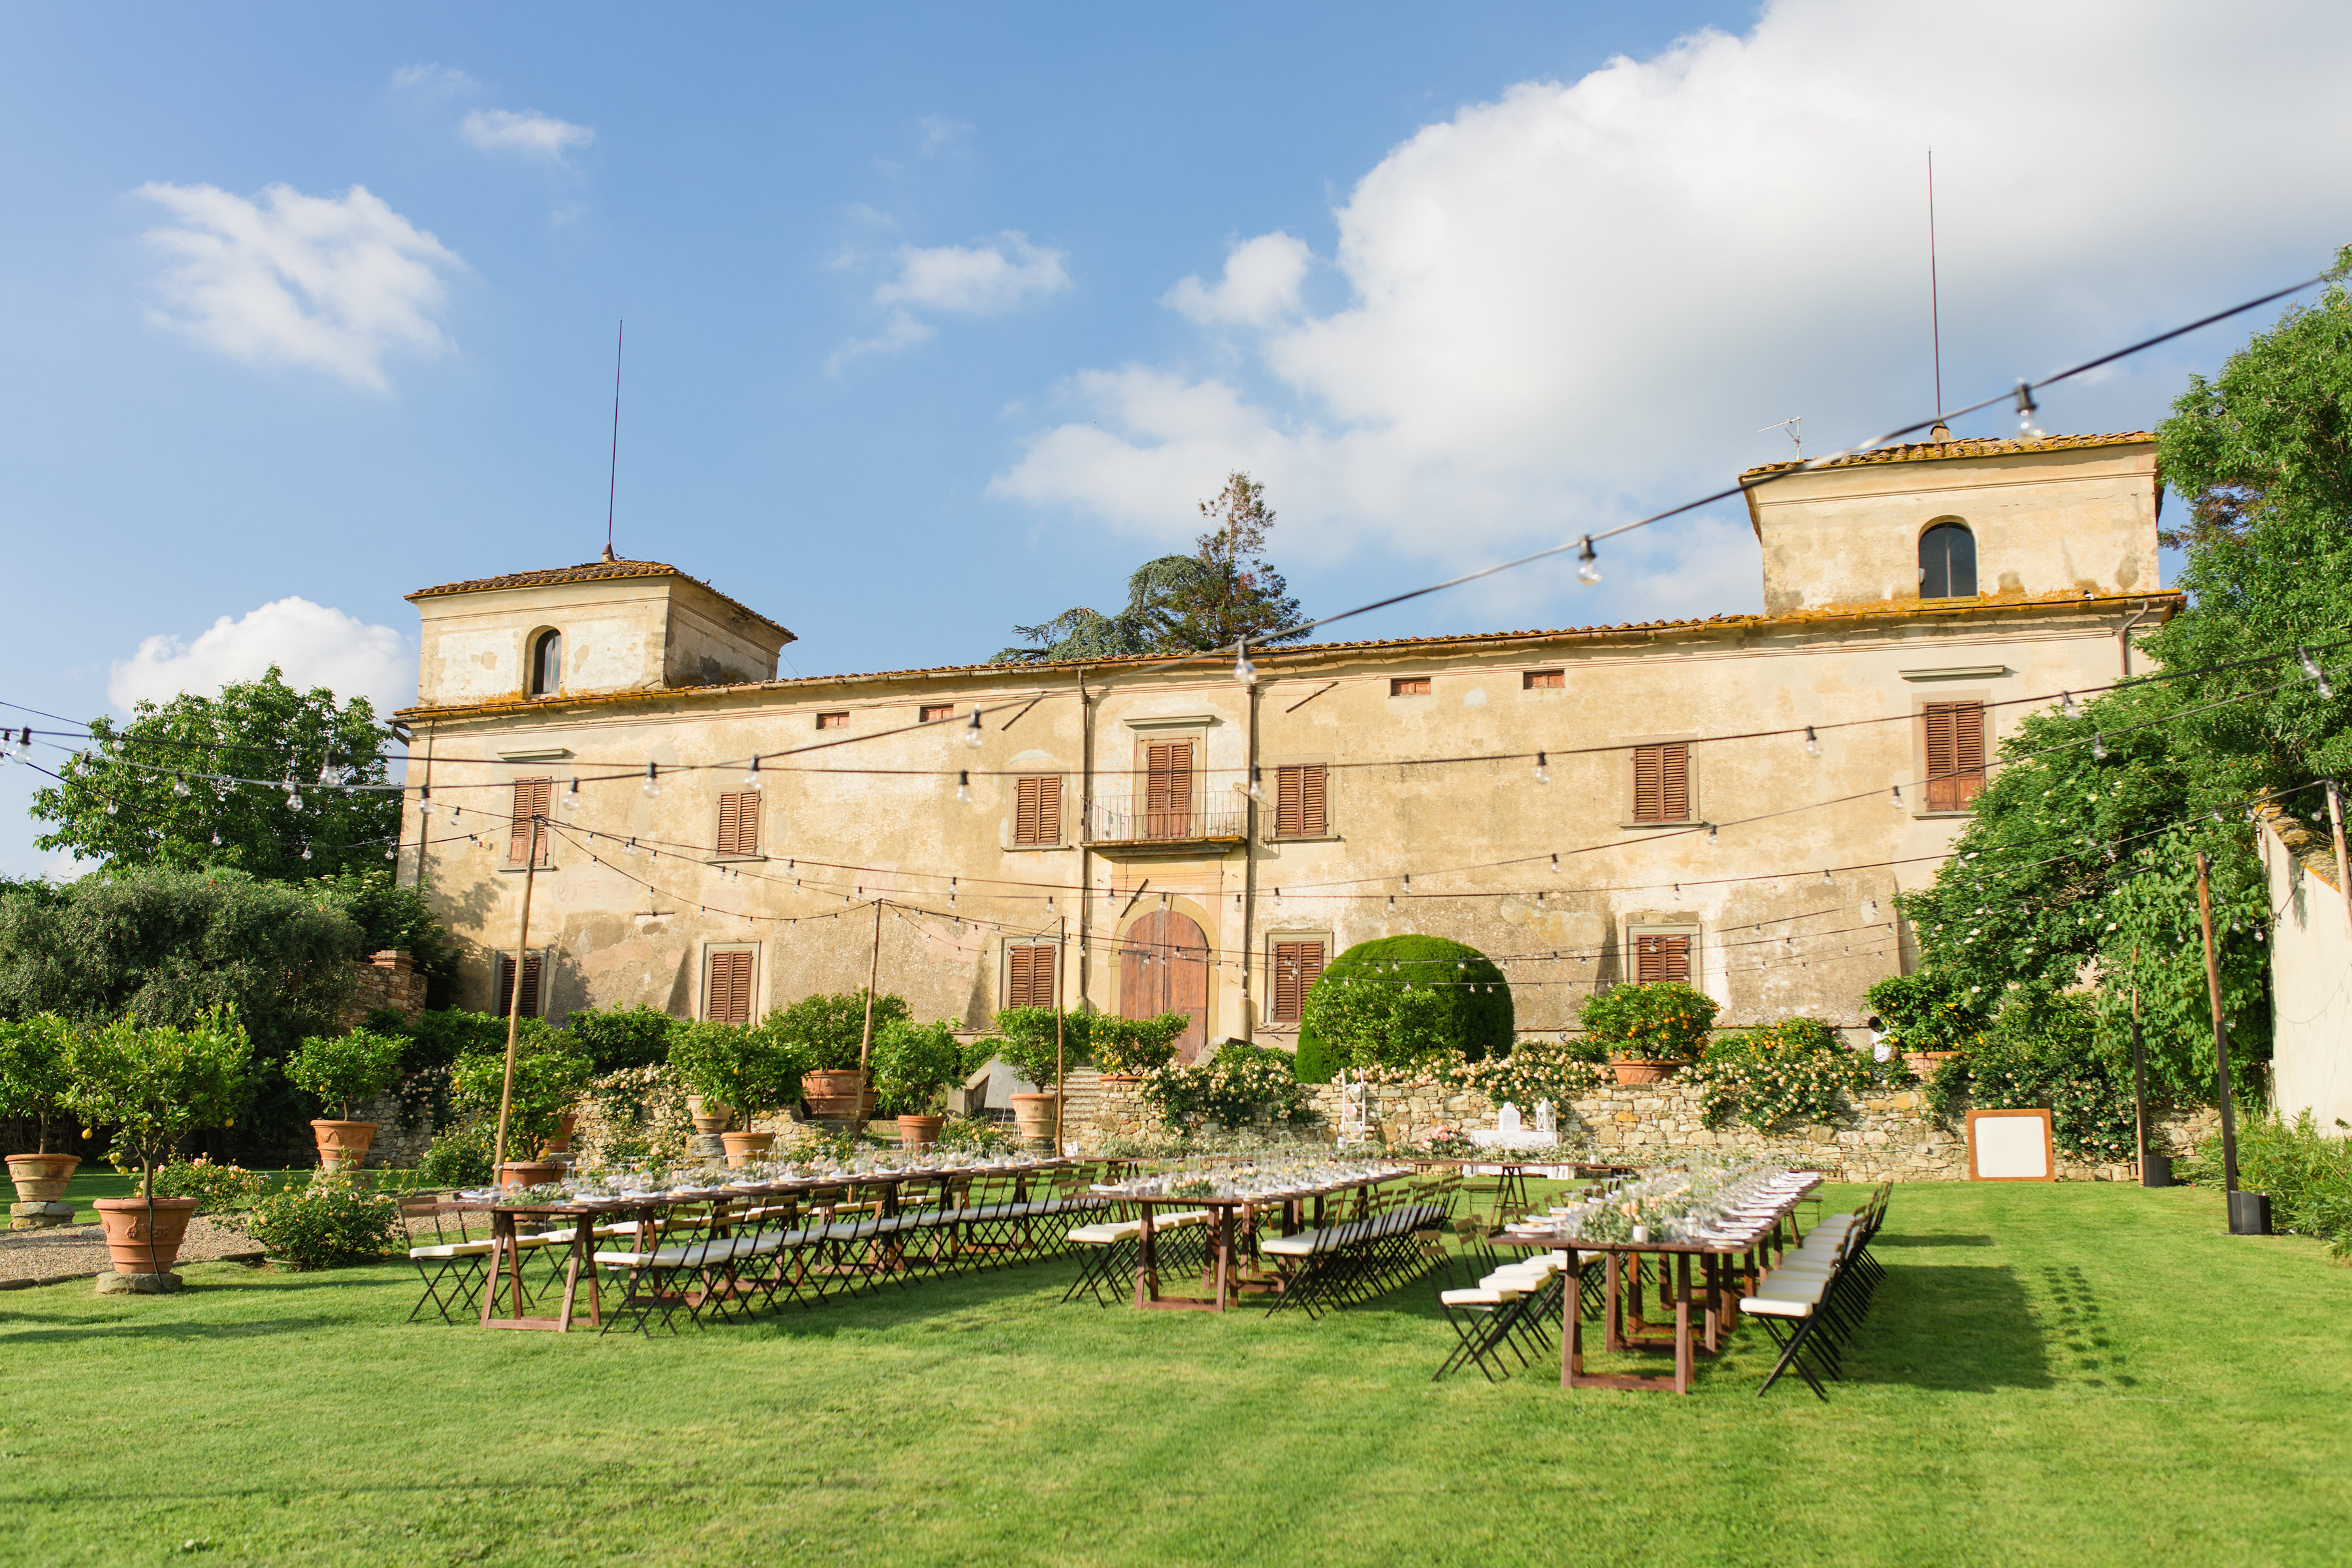 Wedding venue in Tuscany Villa Medicea di Liliana